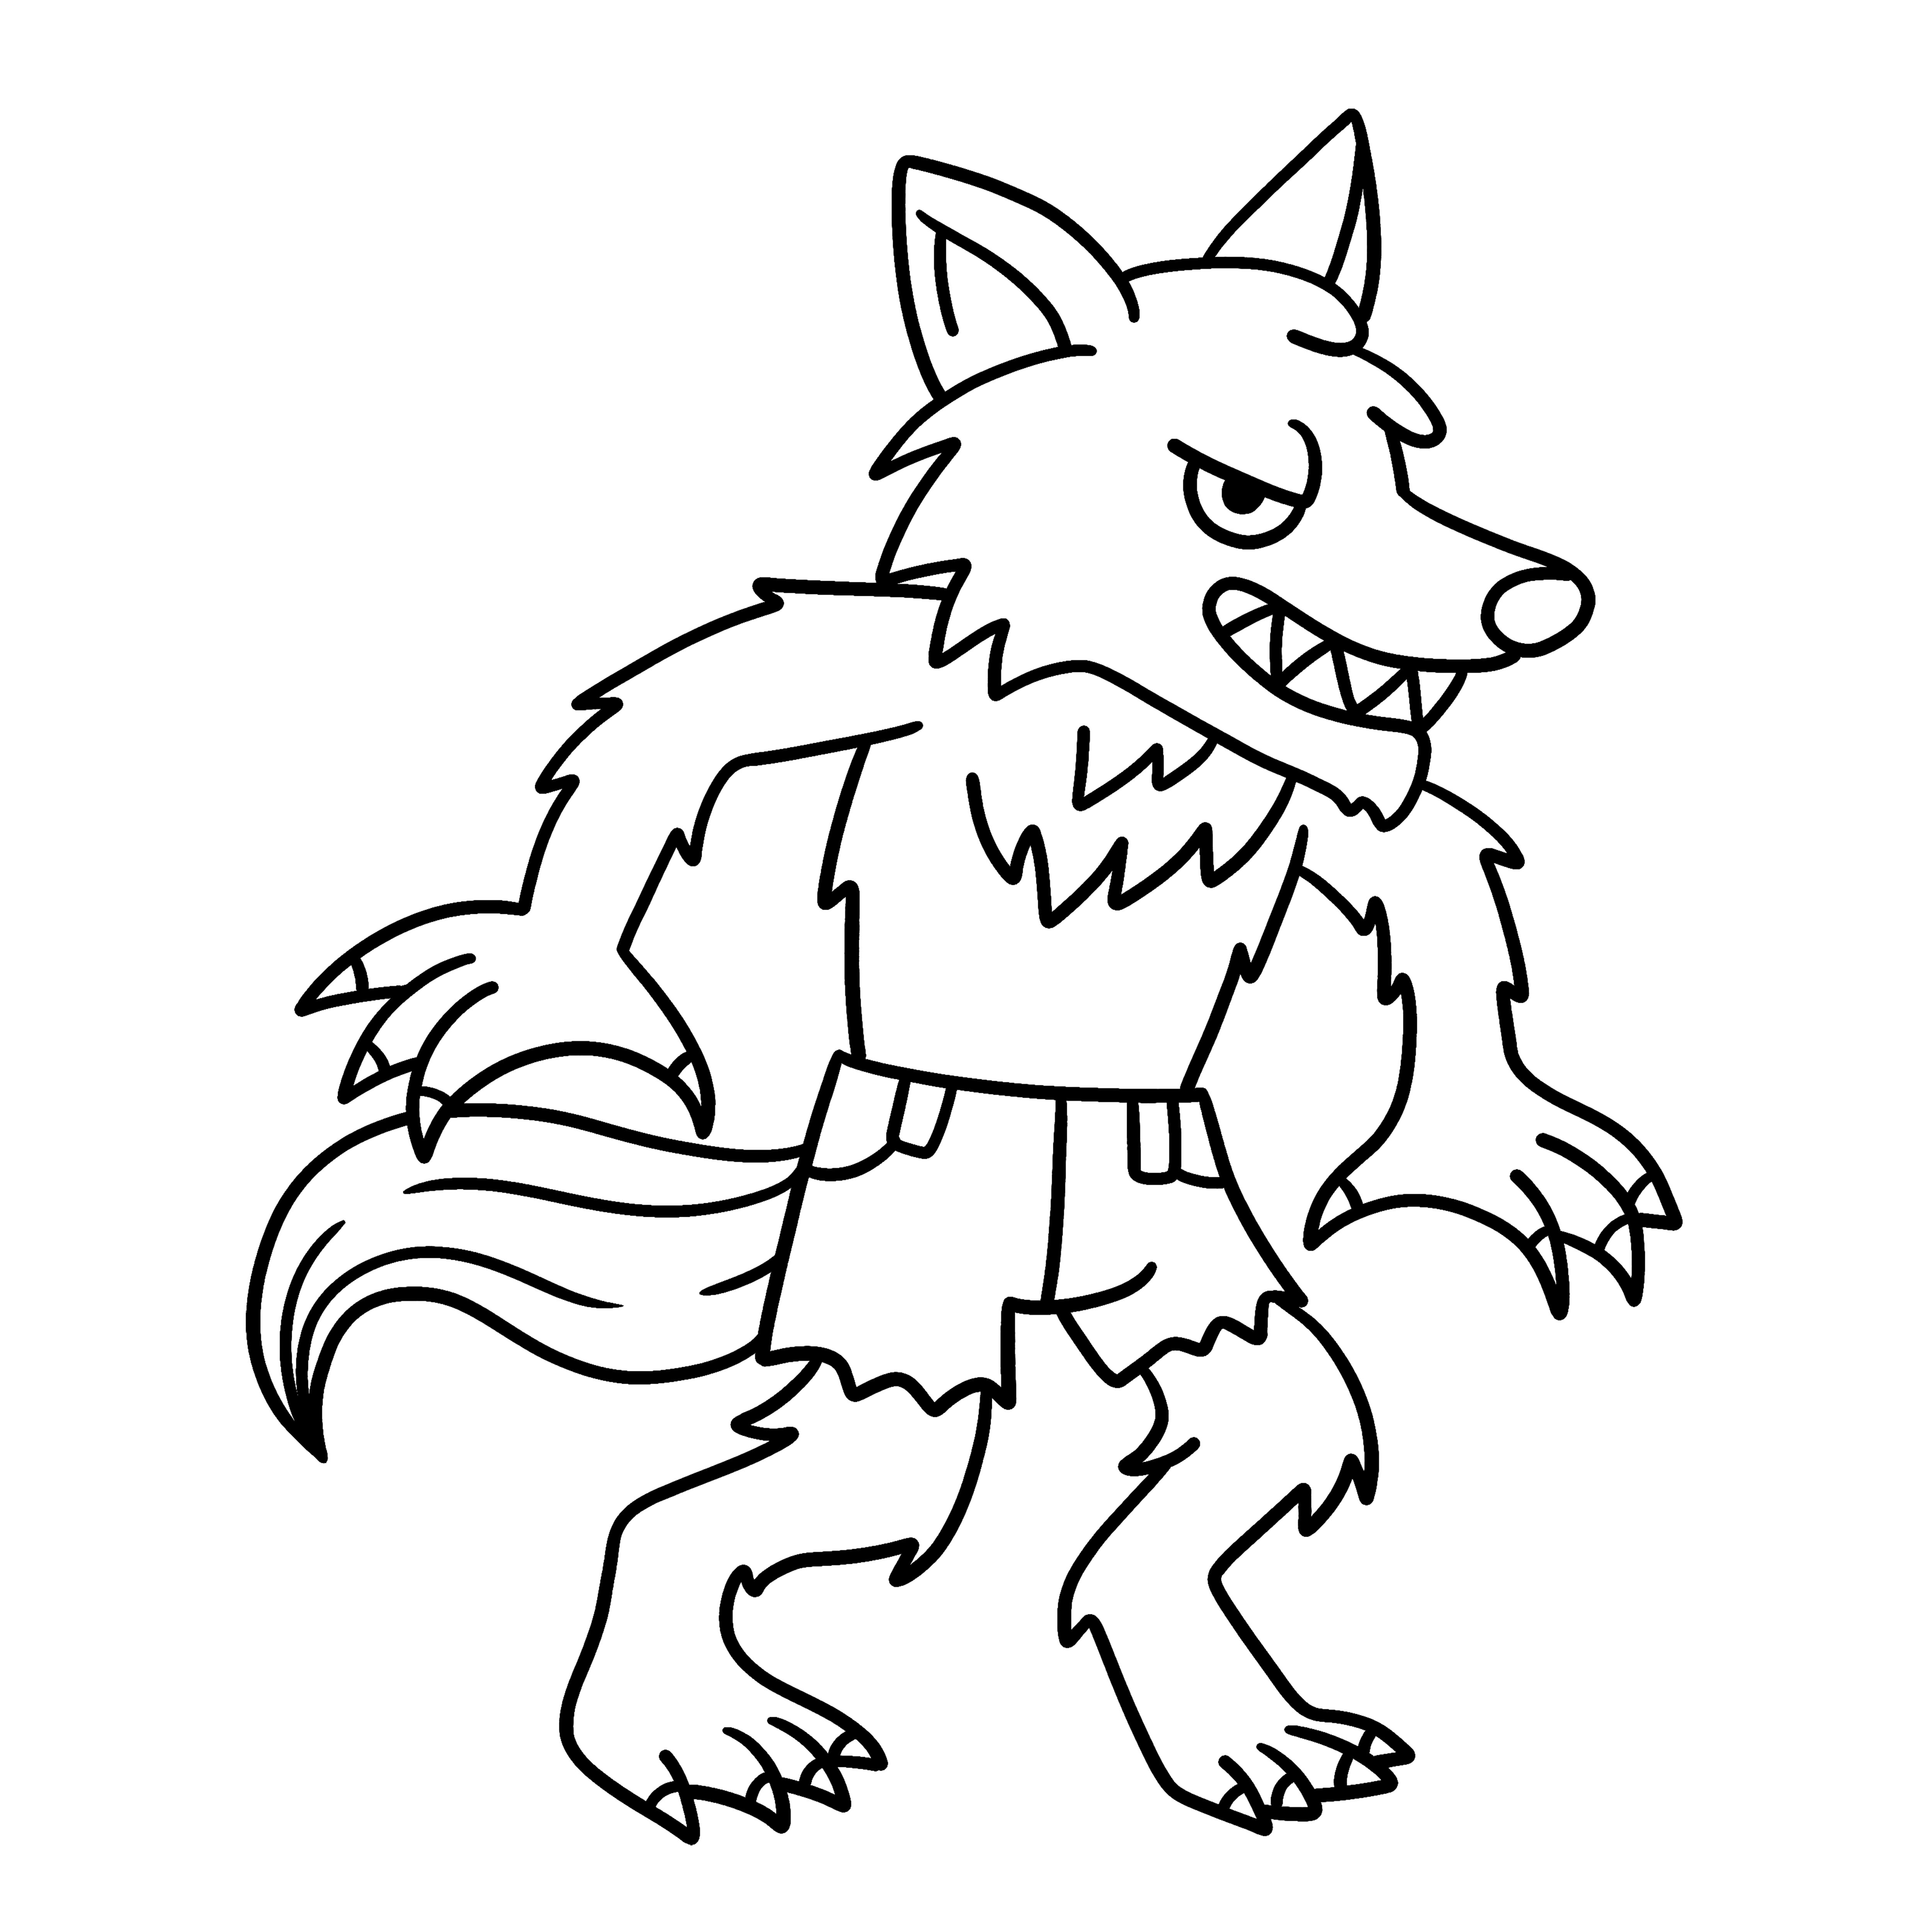 Раскраска злой волк из мультфильма формата А4 в высоком качестве